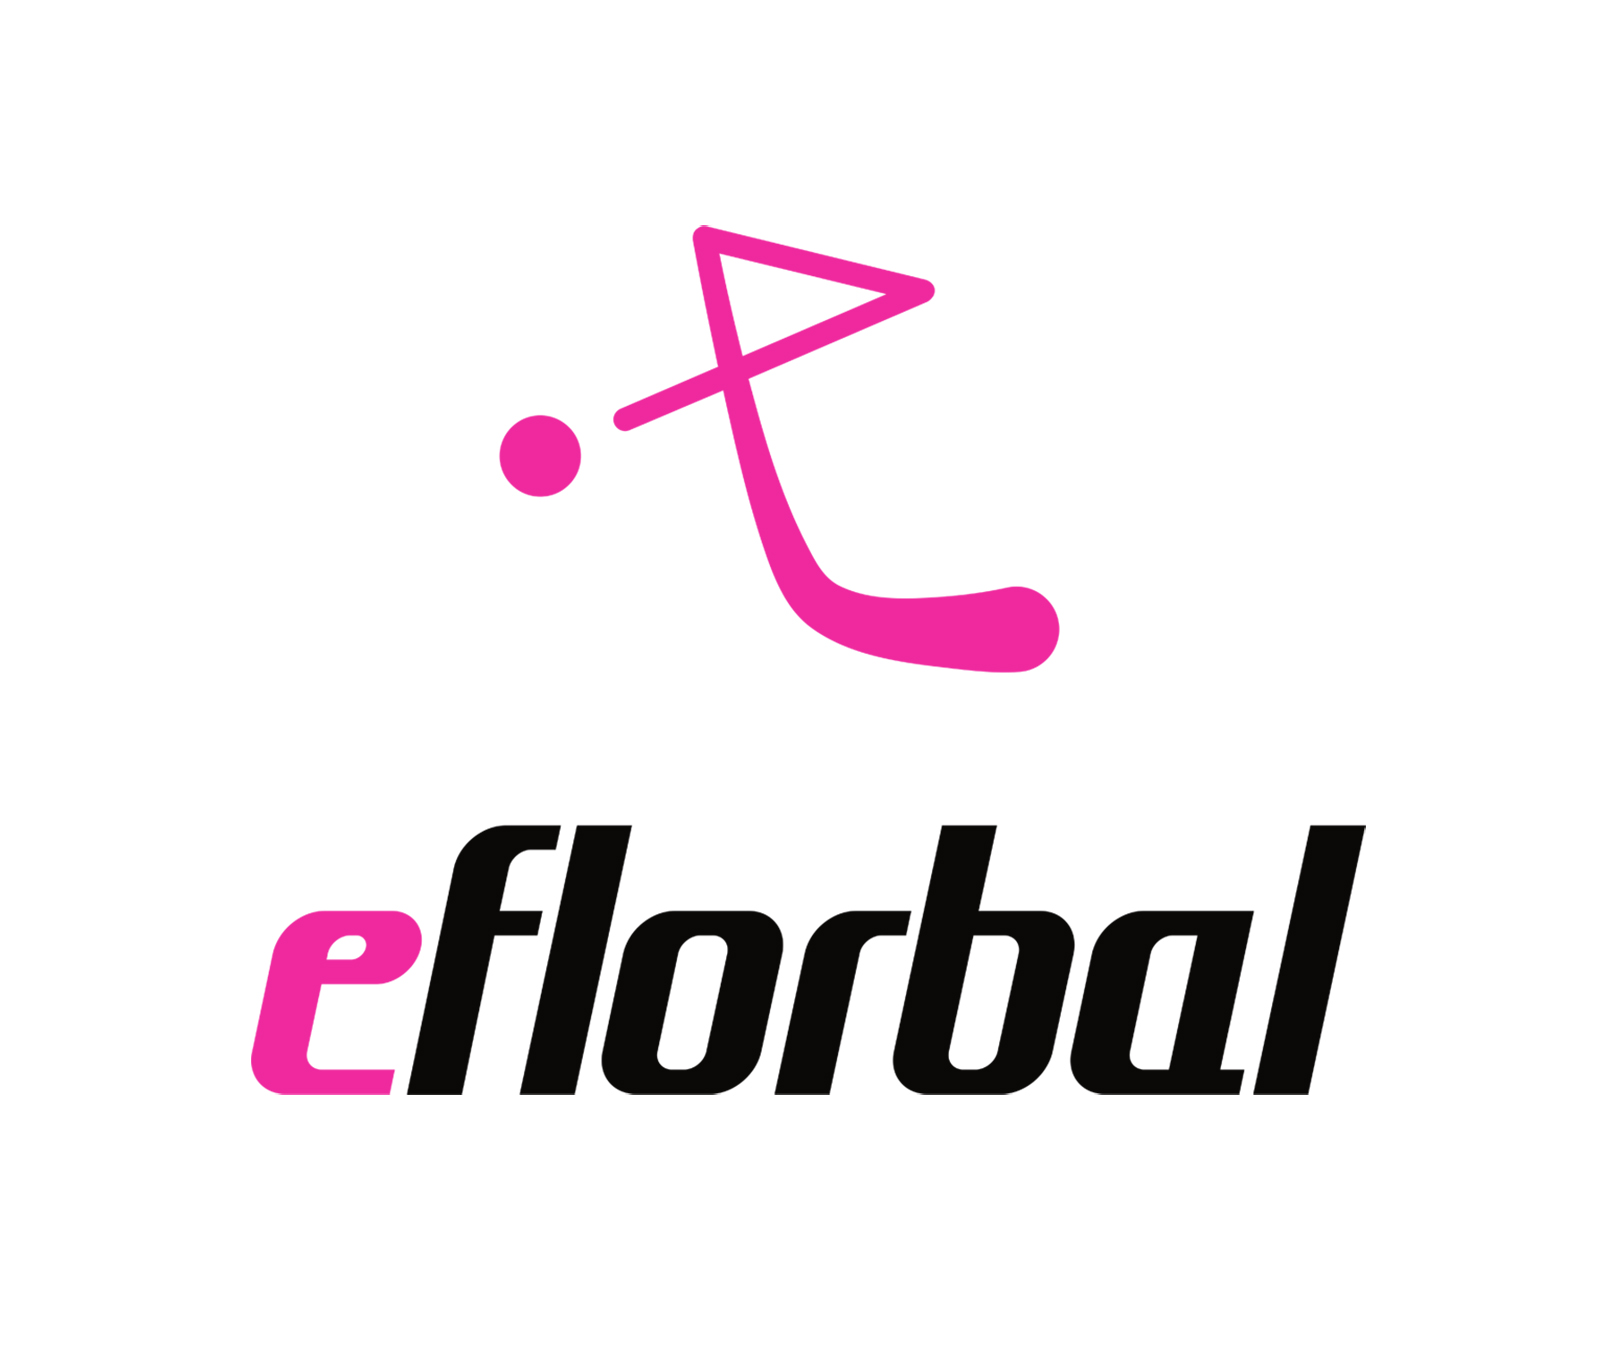 eflorbal - florbal shop